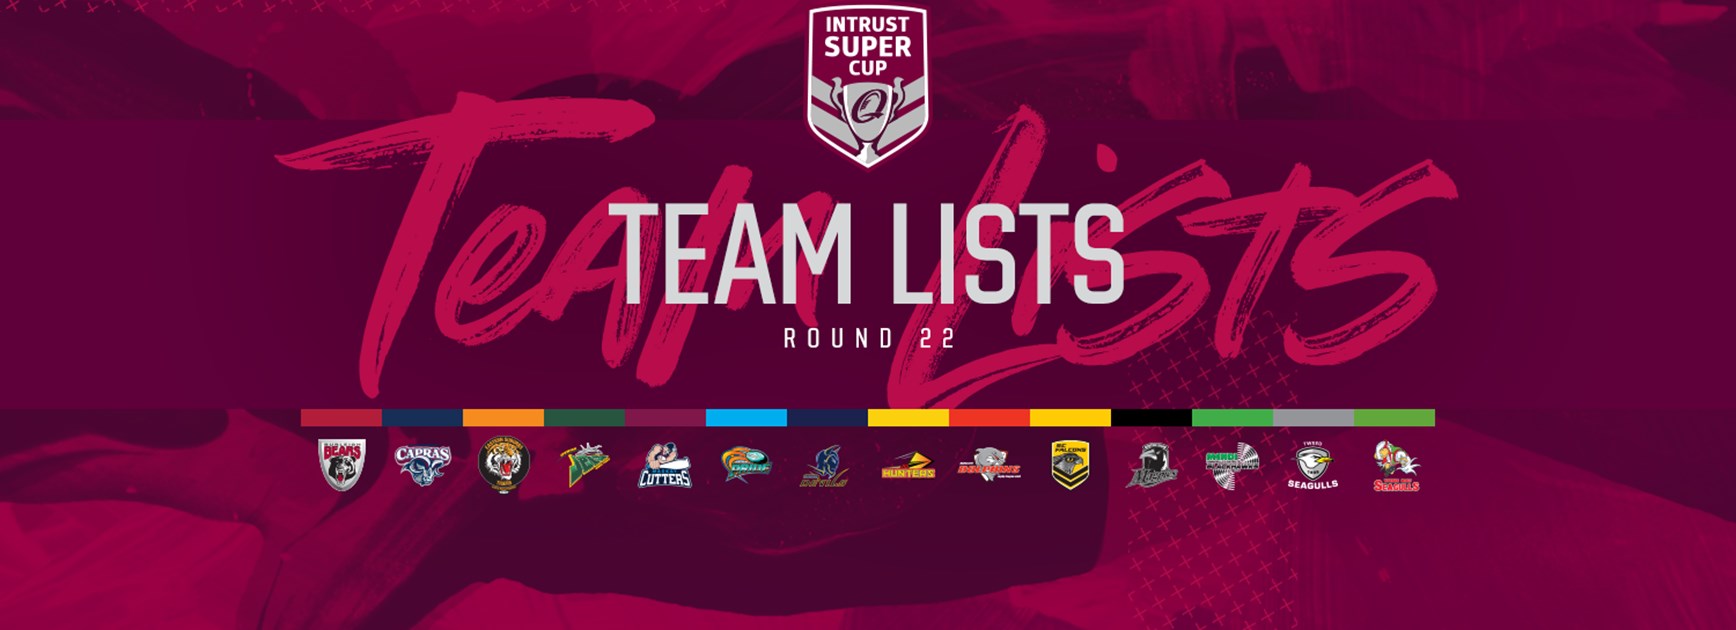 Intrust Super Cup Round 22 teams